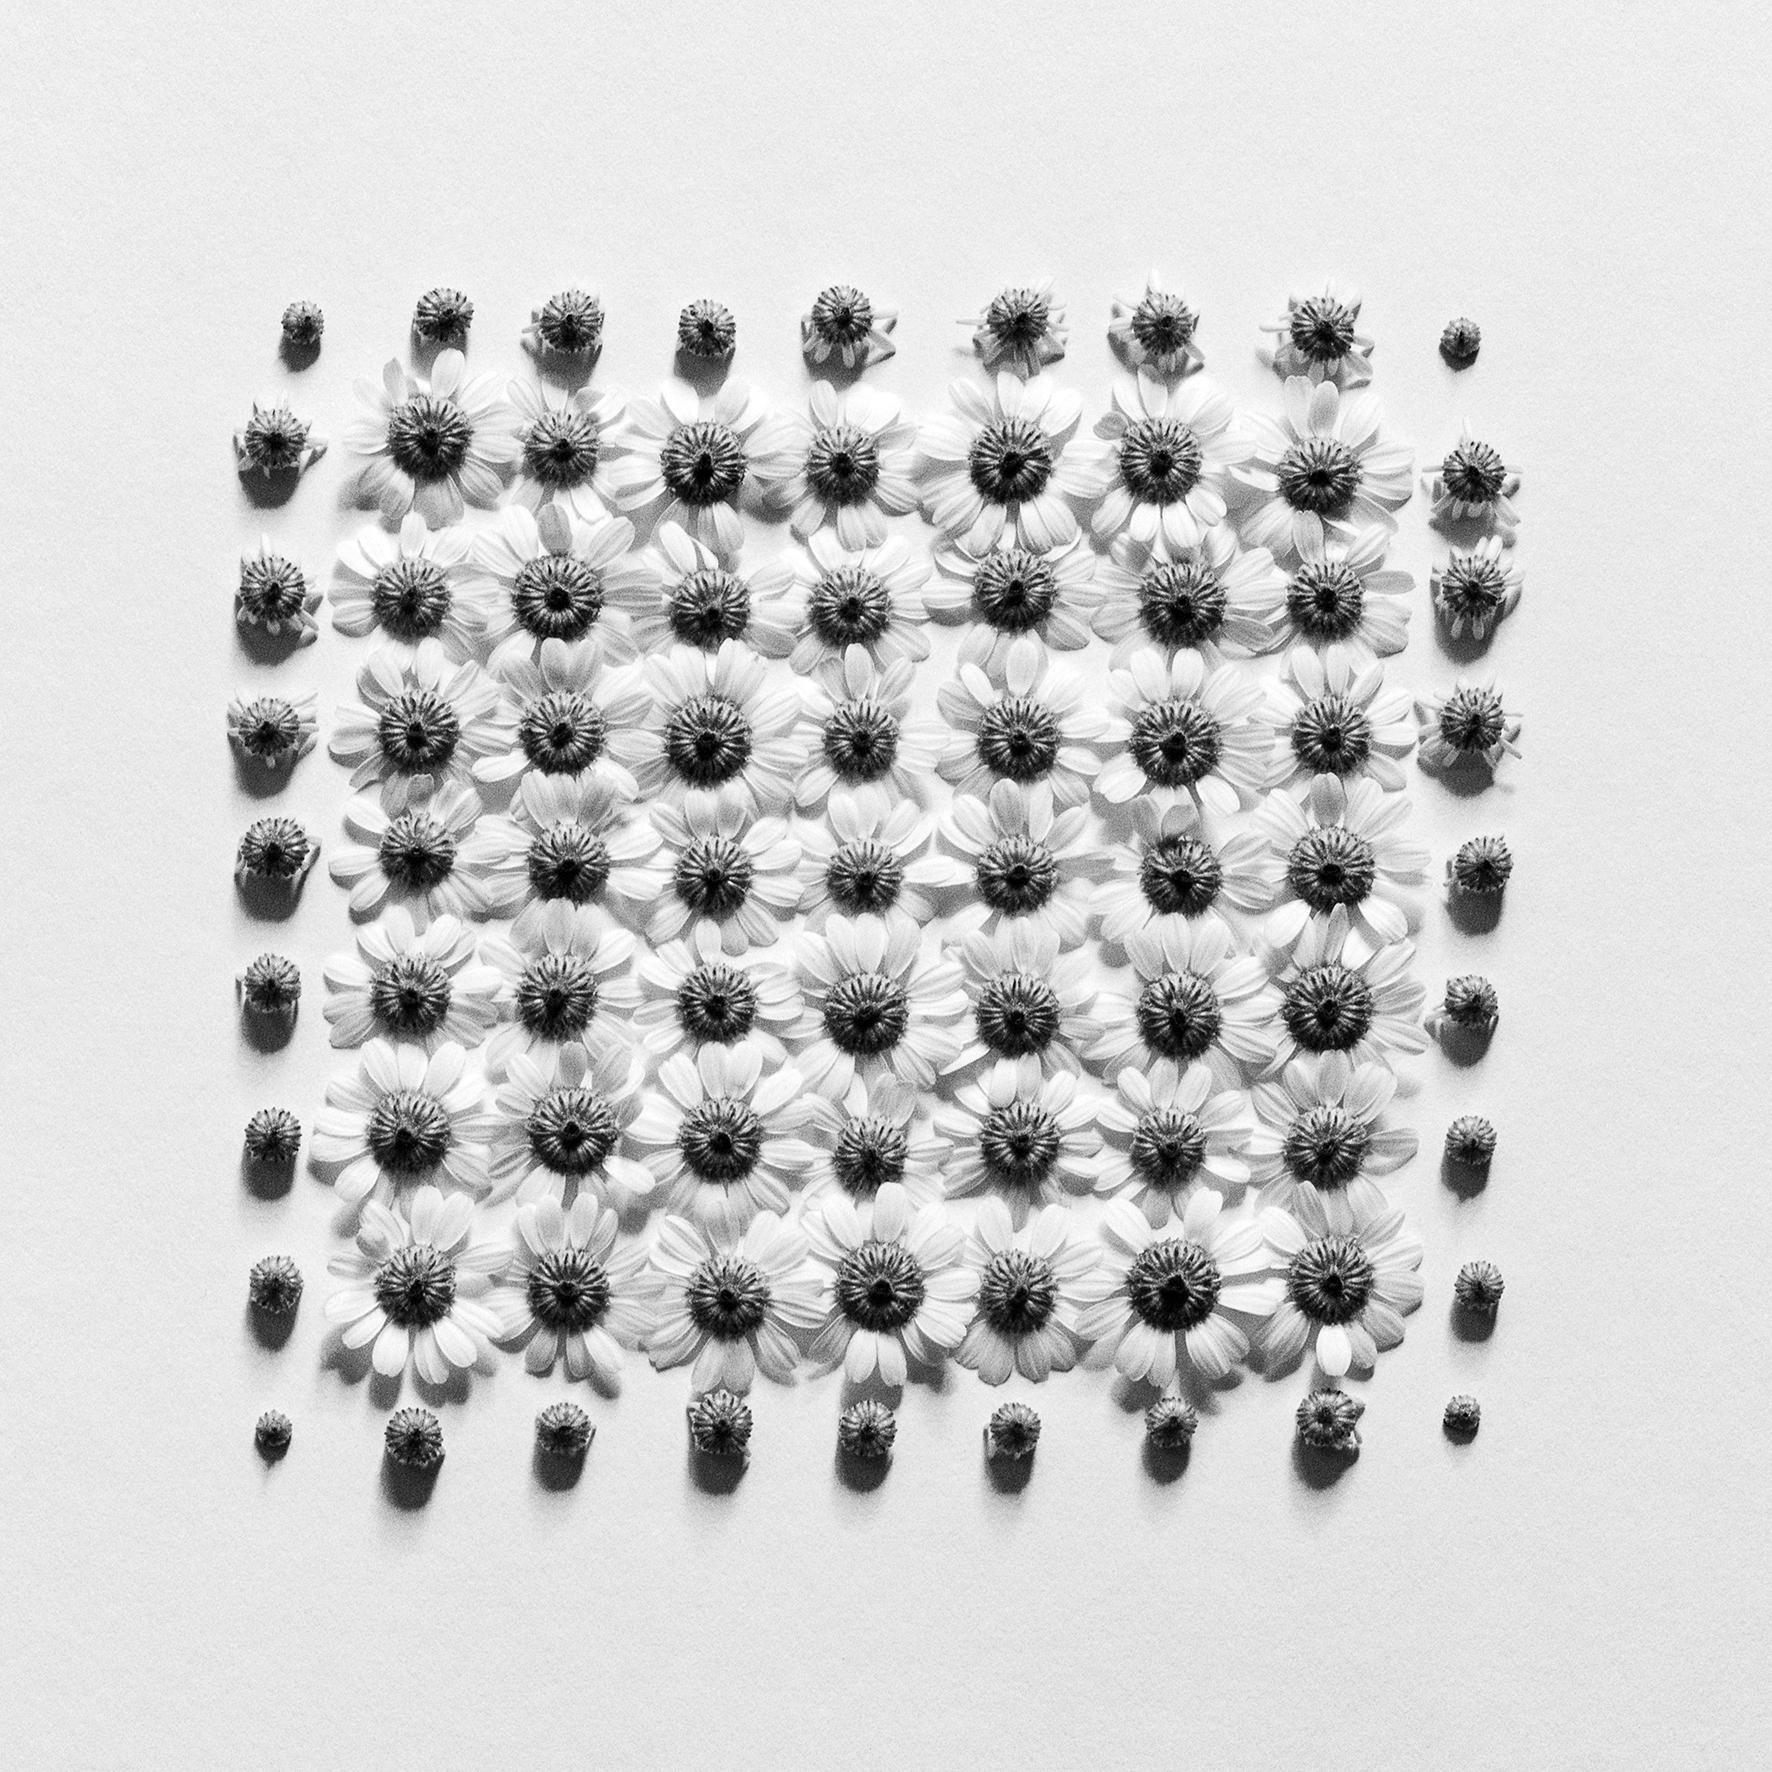 Abstract Photograph Ugne Pouwell - Ramunės No.2- Photographie florale analogique abstraite en noir et blanc, édition de 5 pièces